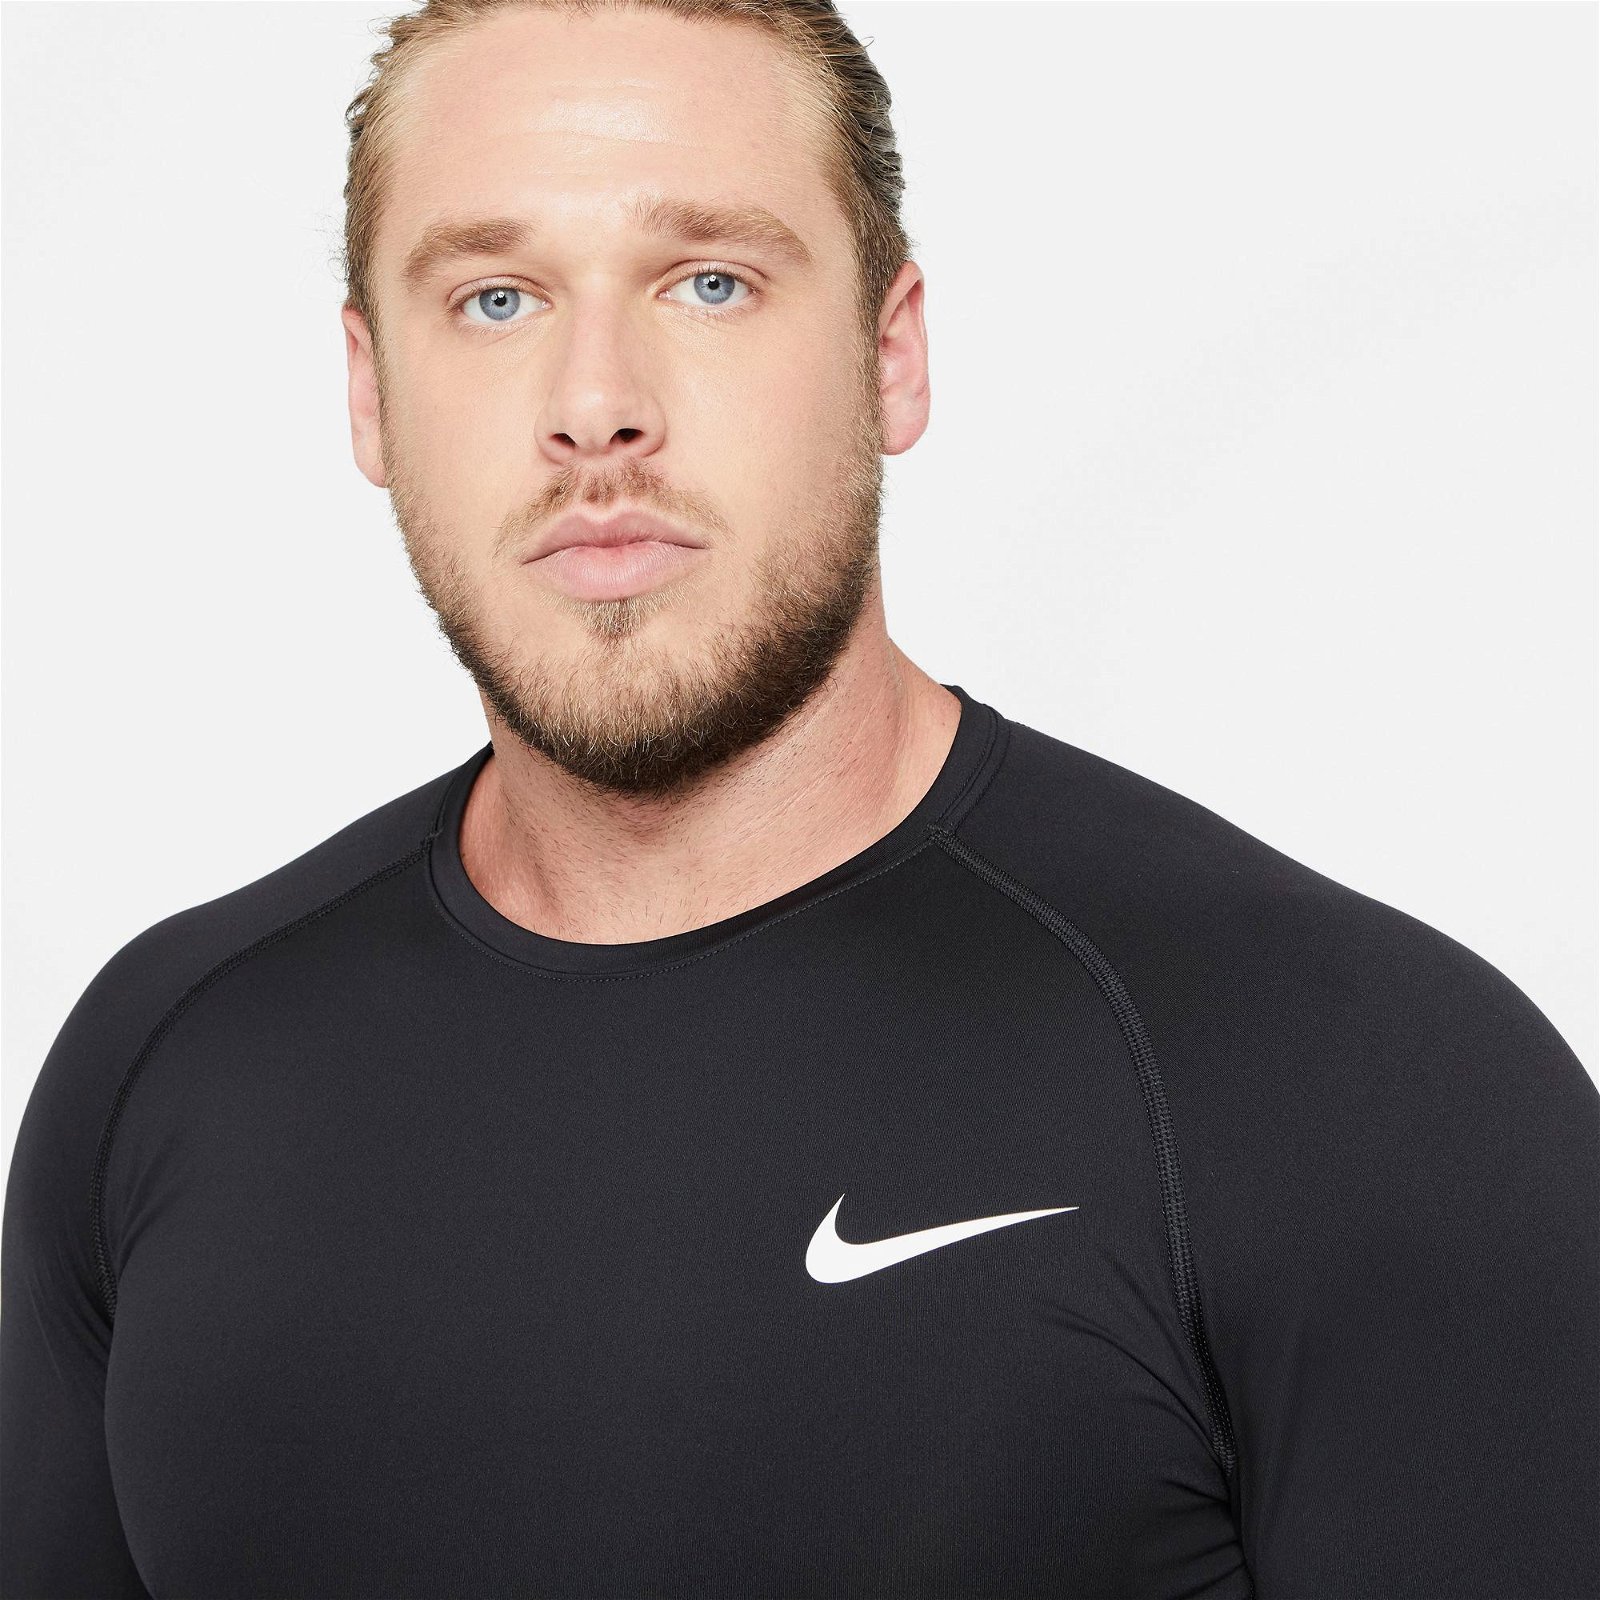 Nike Pro Top Erkek Siyah T-Shirt